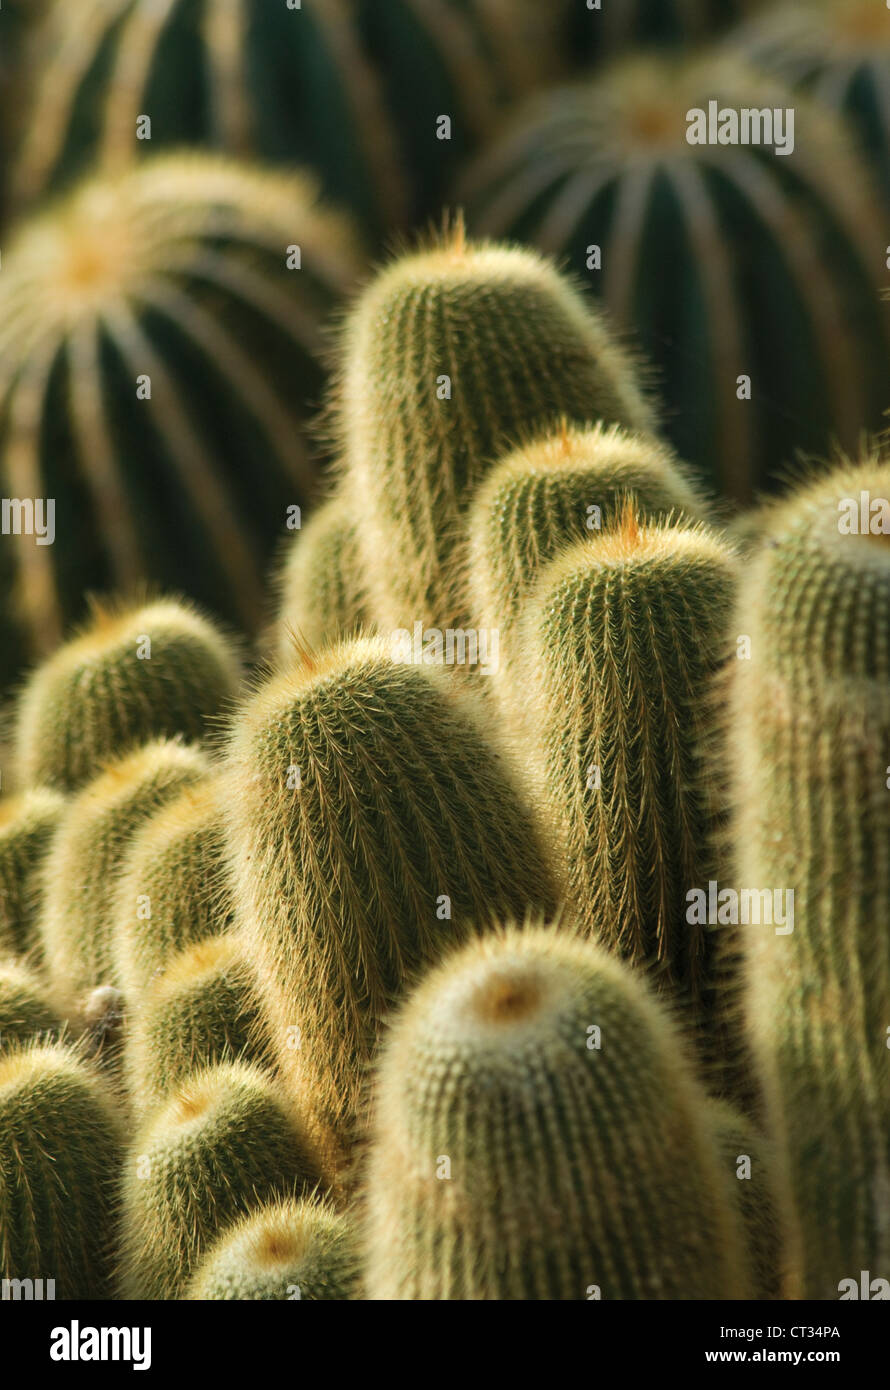 Parodia leninghausii, tour jaune cactus, massés debout les plantes succulentes. Banque D'Images